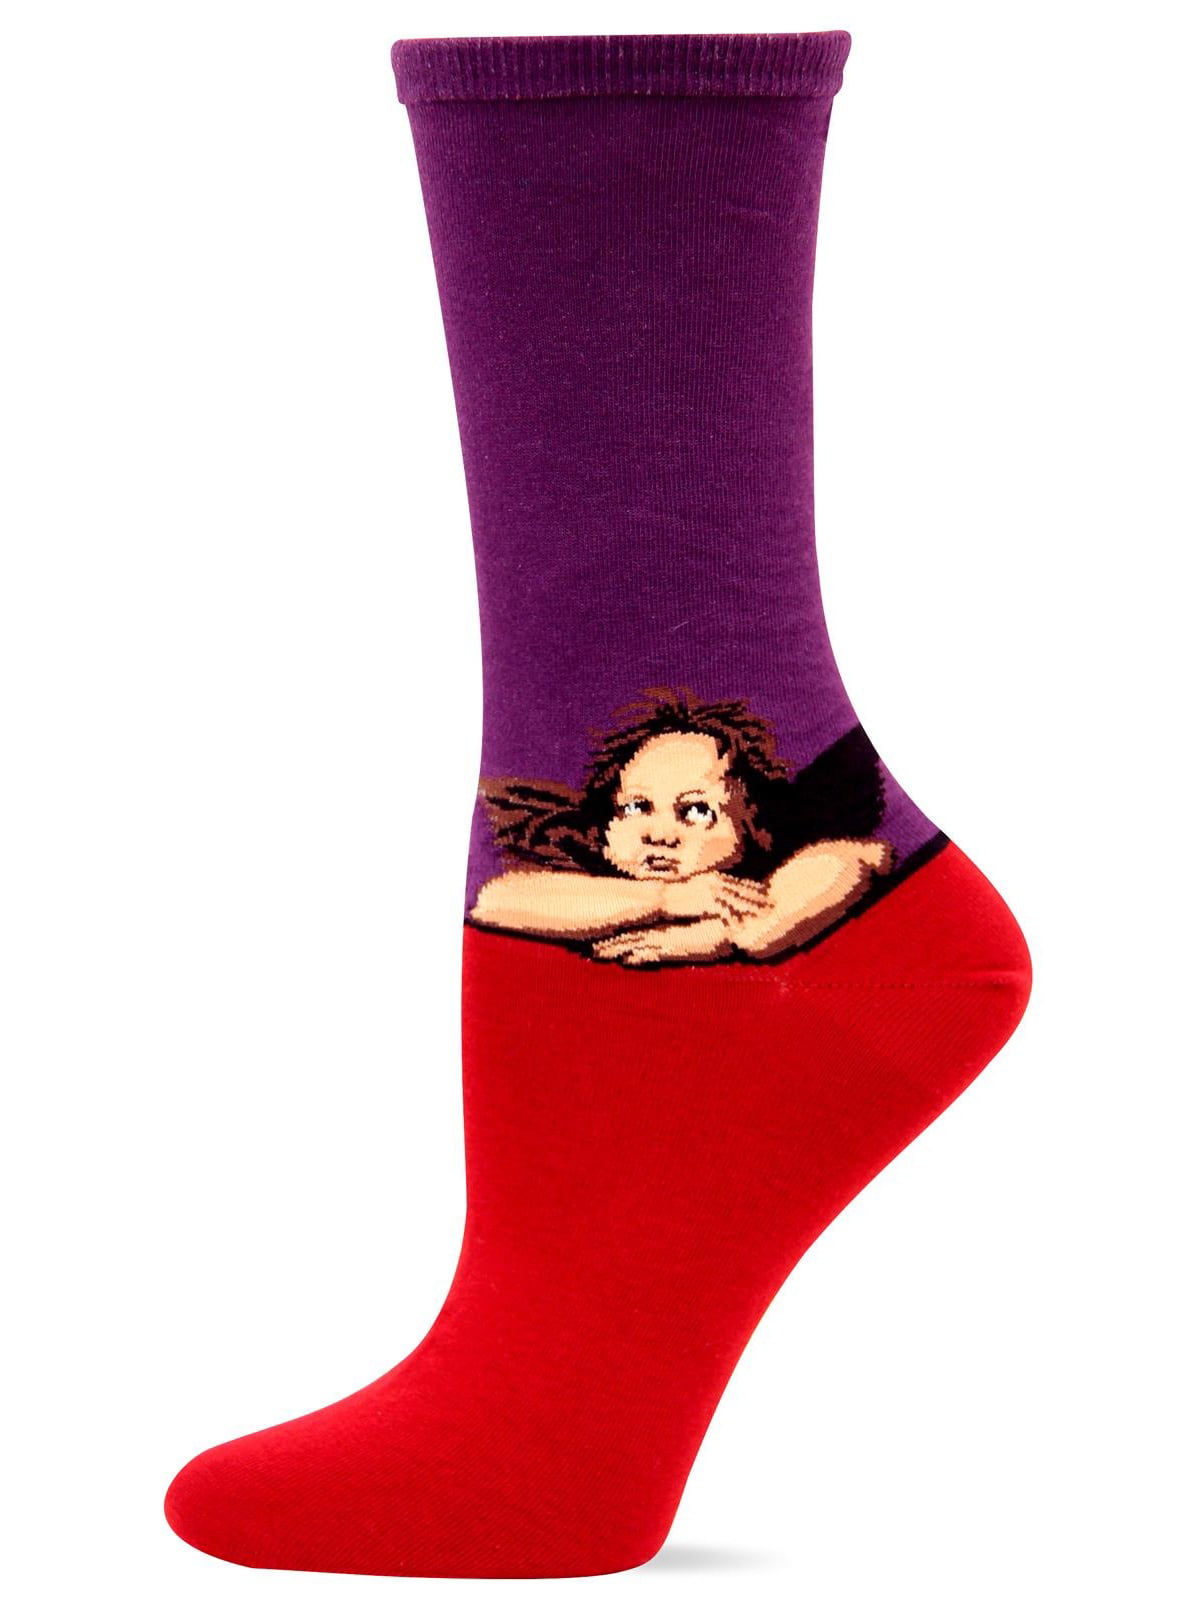 Size 9-11 Purple - 1 Pair Women's Socks Hot Sox RAPHAEL'S ANGELS - HS-0089